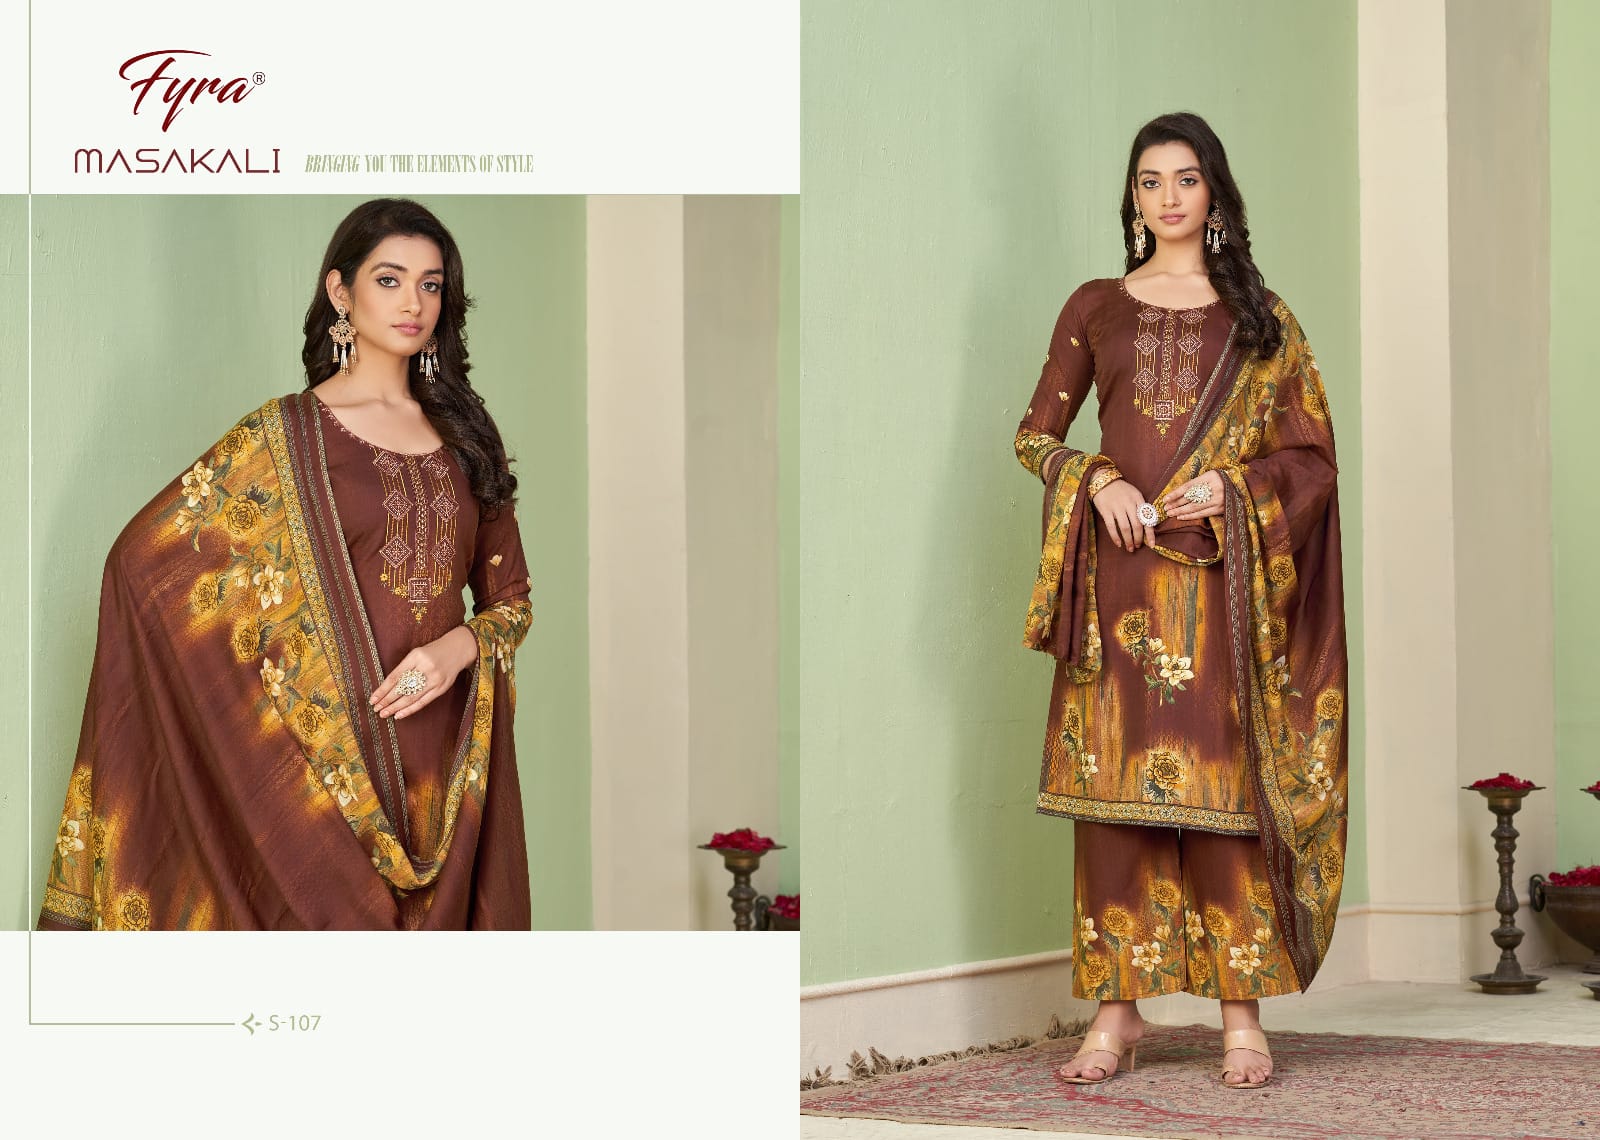 fyra alok suit masakali cotton regal look salwar suit catalog